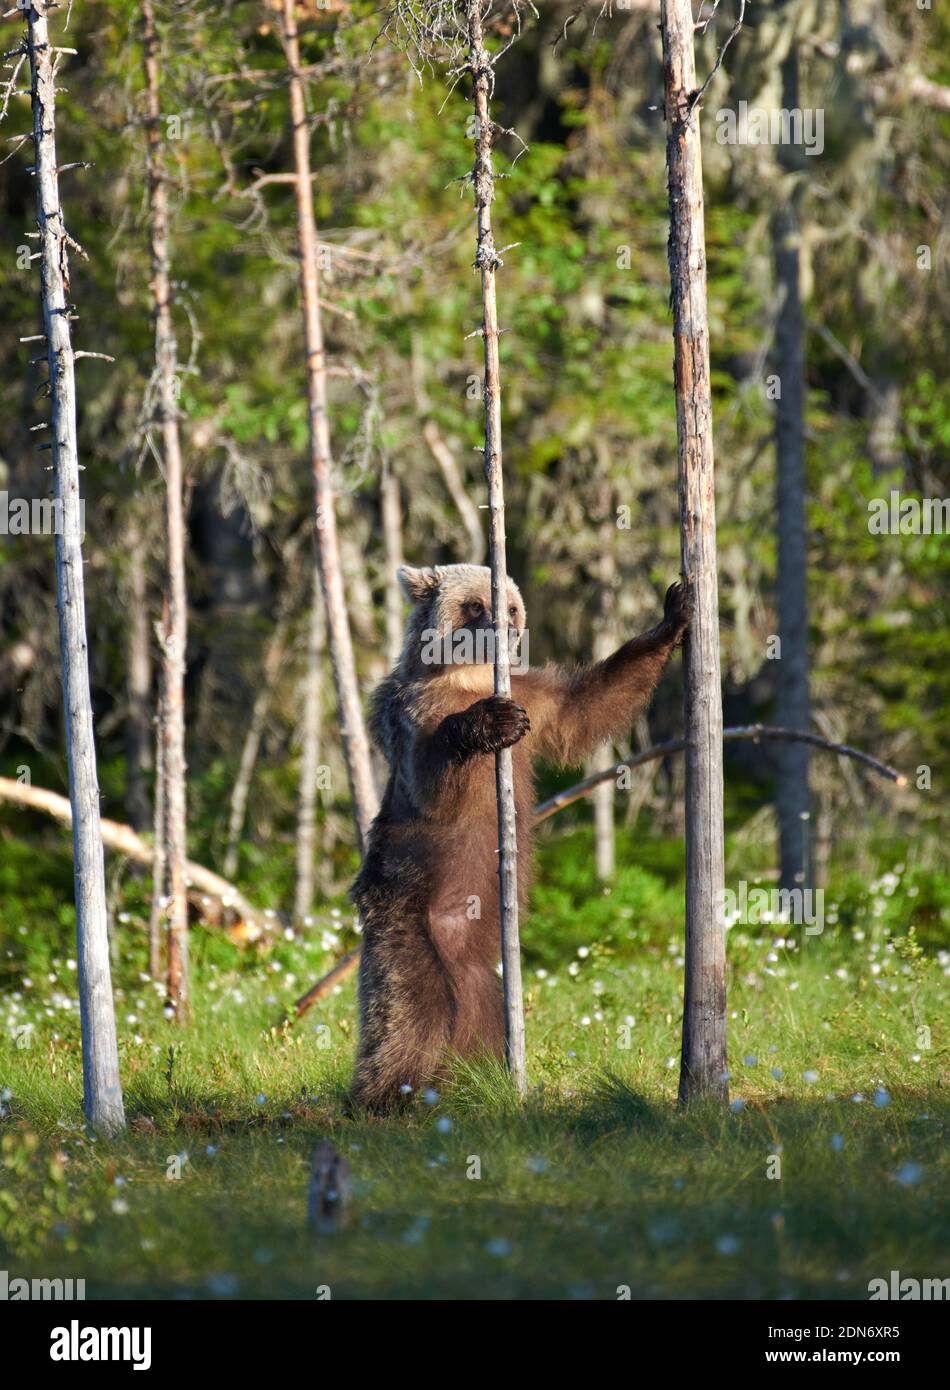 Junger Braunbär (Ursus arctos), der Ende Juni 2018 zwischen Bäumen im Sumpf im Nordosten Finnlands steht. Stockfoto